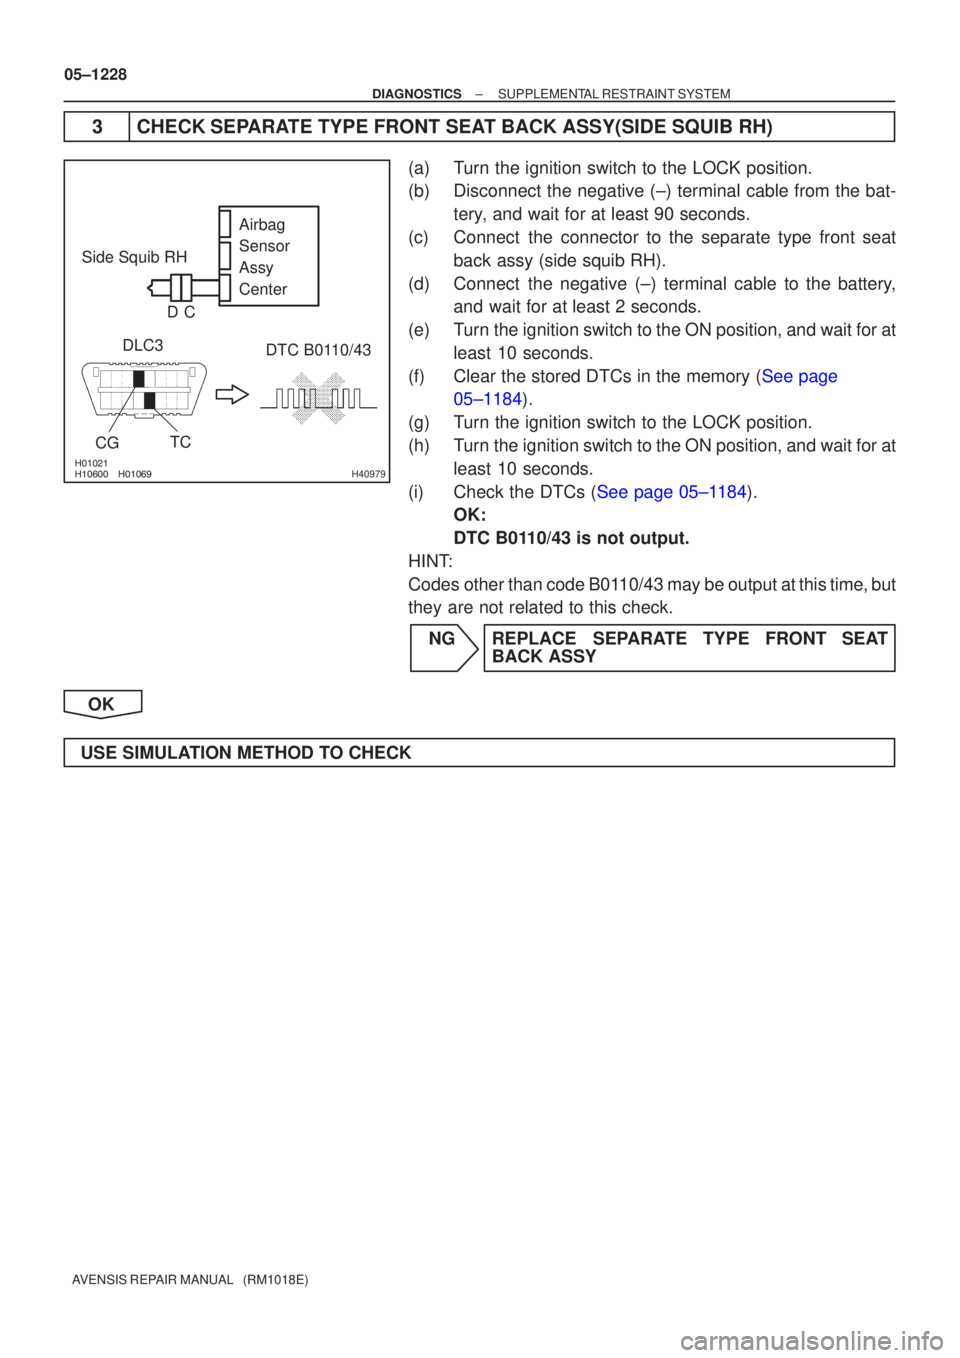 TOYOTA AVENSIS 2005  Service Repair Manual 
 H40979
Side Squib RHDLC3 DTC B0110/43
TC
CG Airbag 
Sensor 
Assy
Center
C
D
05±1228
±
DIAGNOSTICS SUPPLEMENTAL RESTRAINT SYSTEM
AVENSIS REPAIR MANUAL   (RM1018E)
3 CHECK SEPARATE